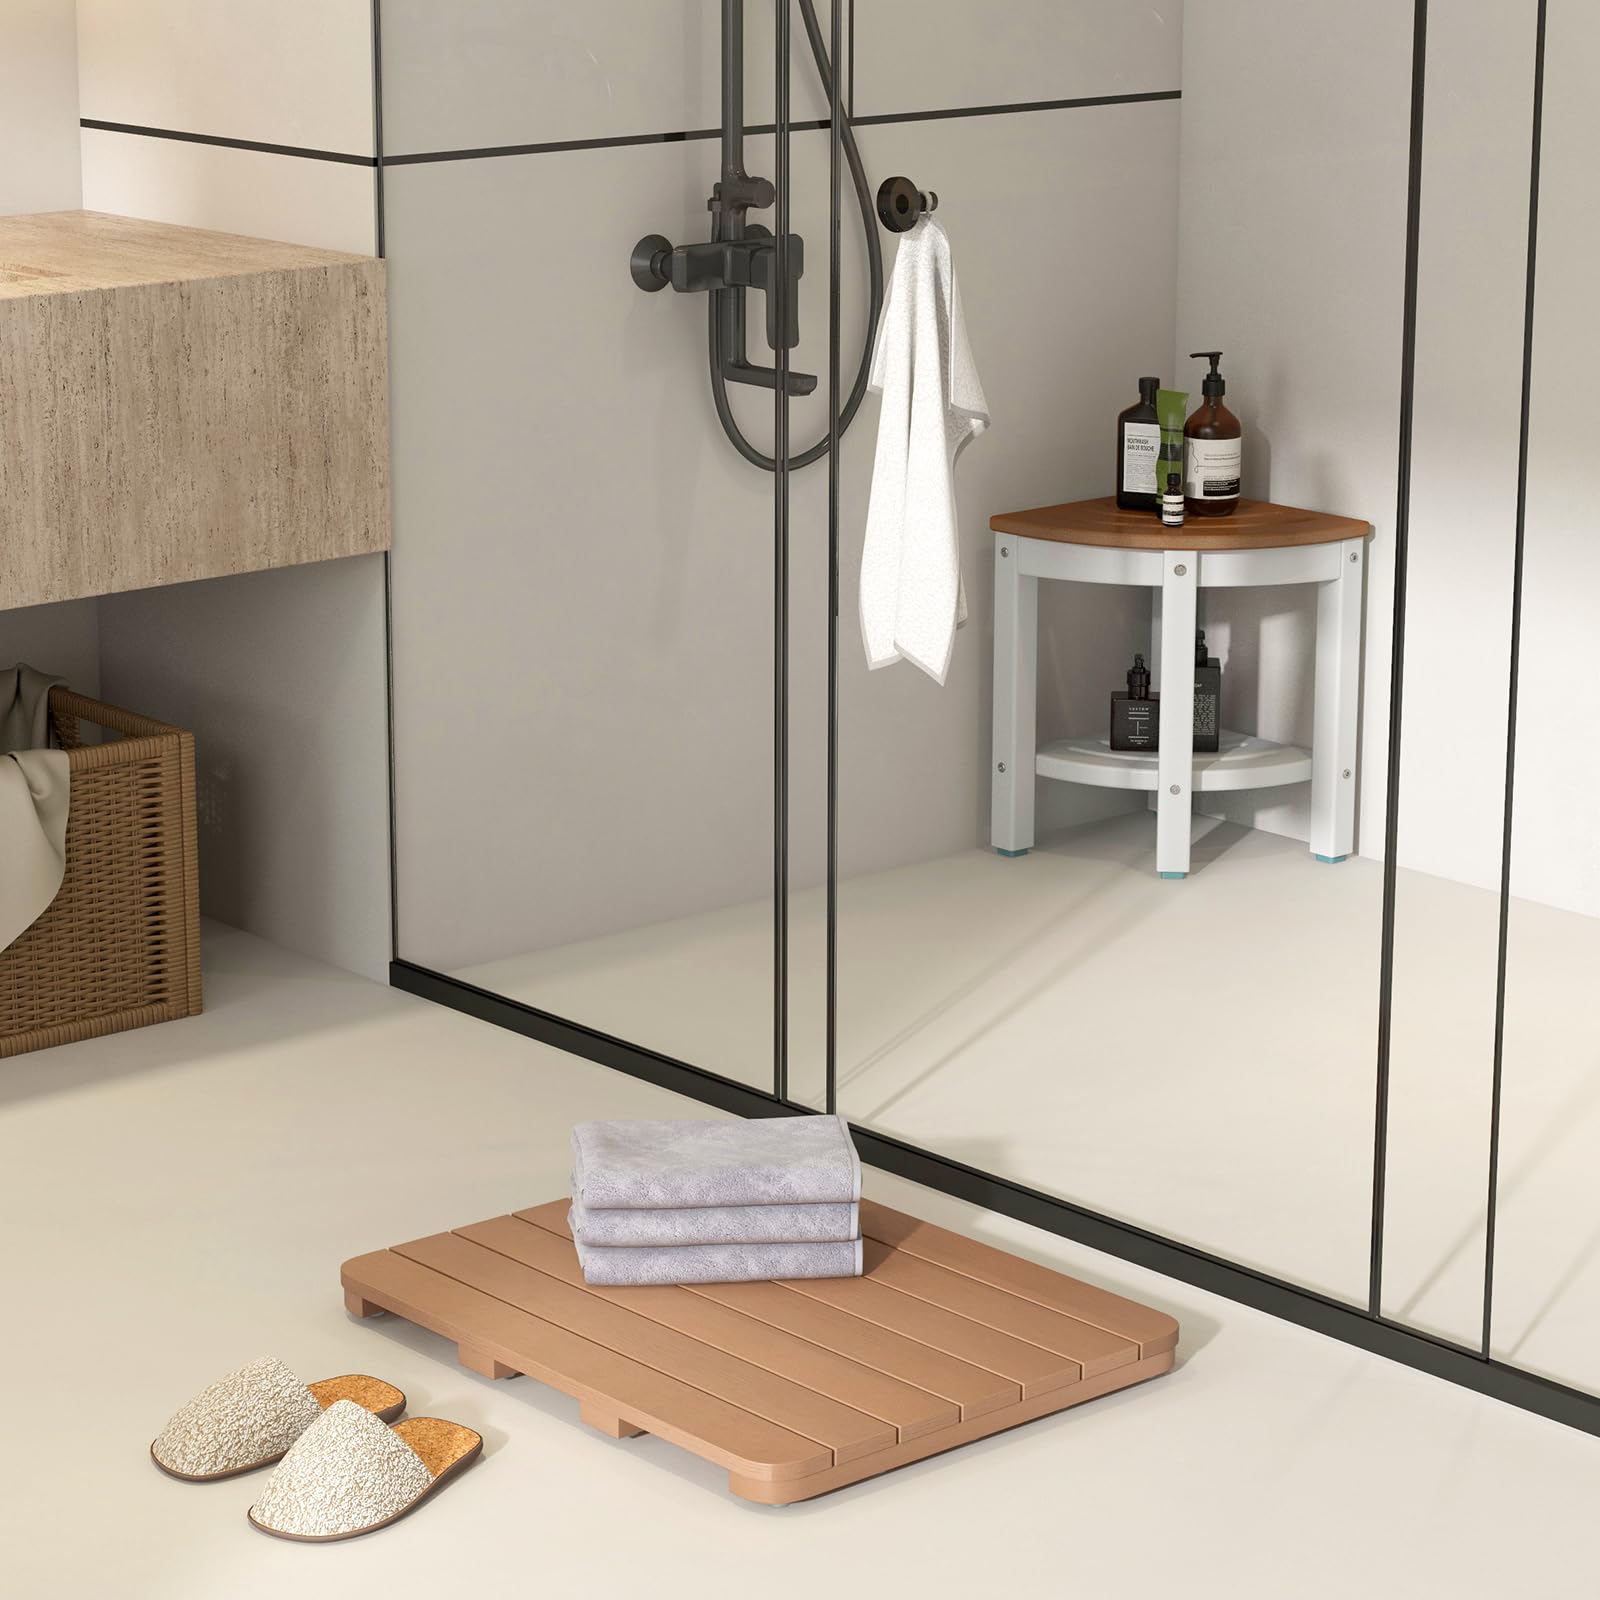 Giantex Waterproof Bath Mat, Shower Mat for Bathroom Inside, Outdoor HIPS Floor Mat with Non Foot Pads